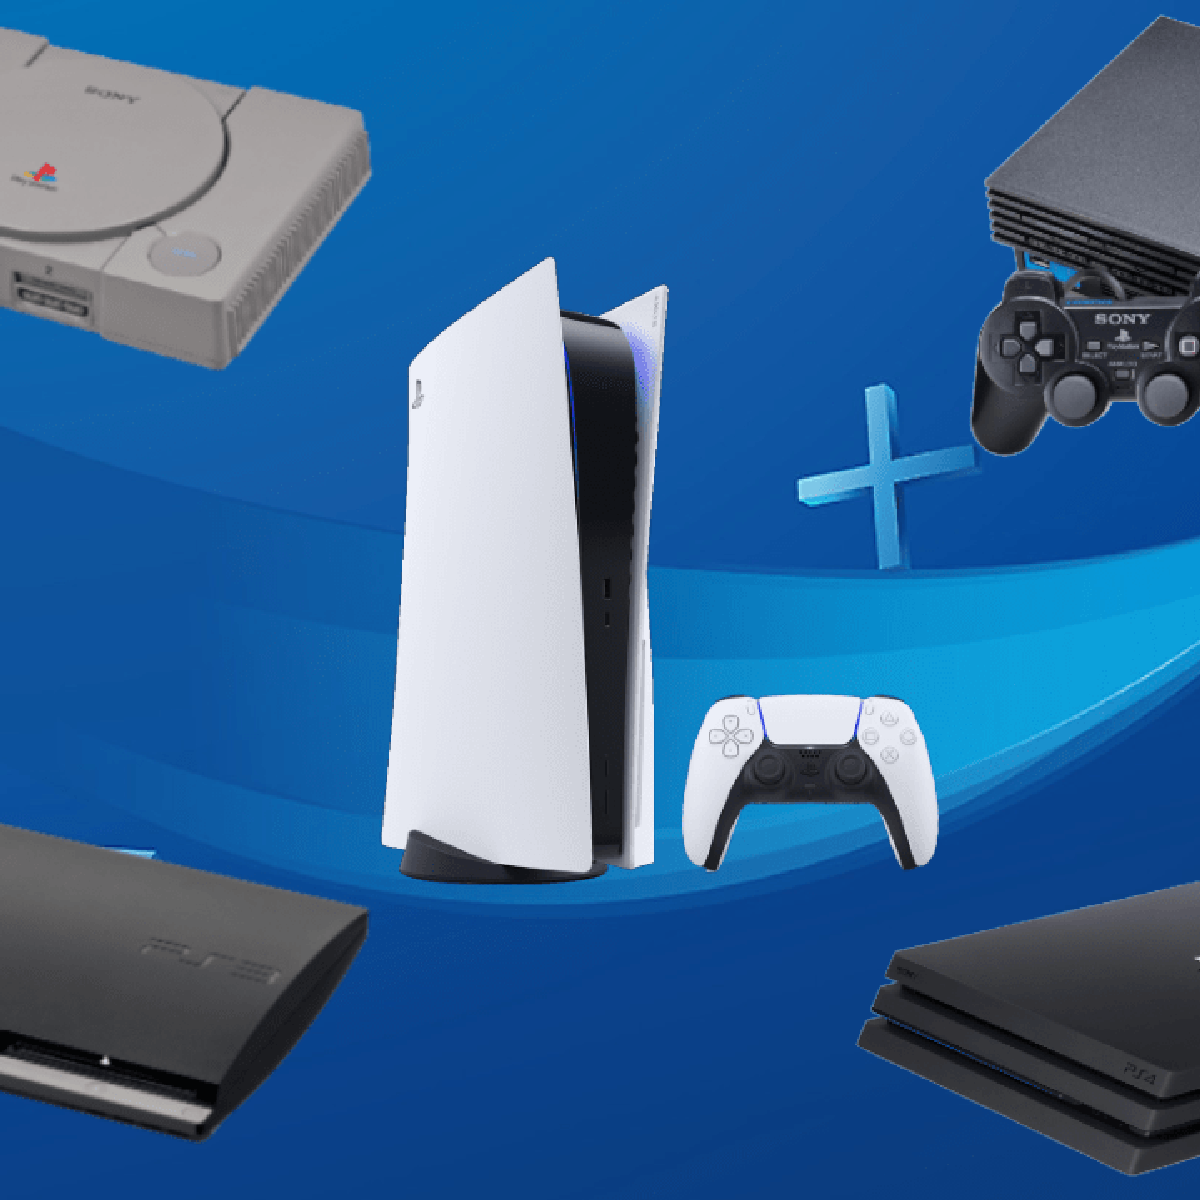 Acessórios e jogos de PS5 e PS4 com ótimas ofertas no varejo